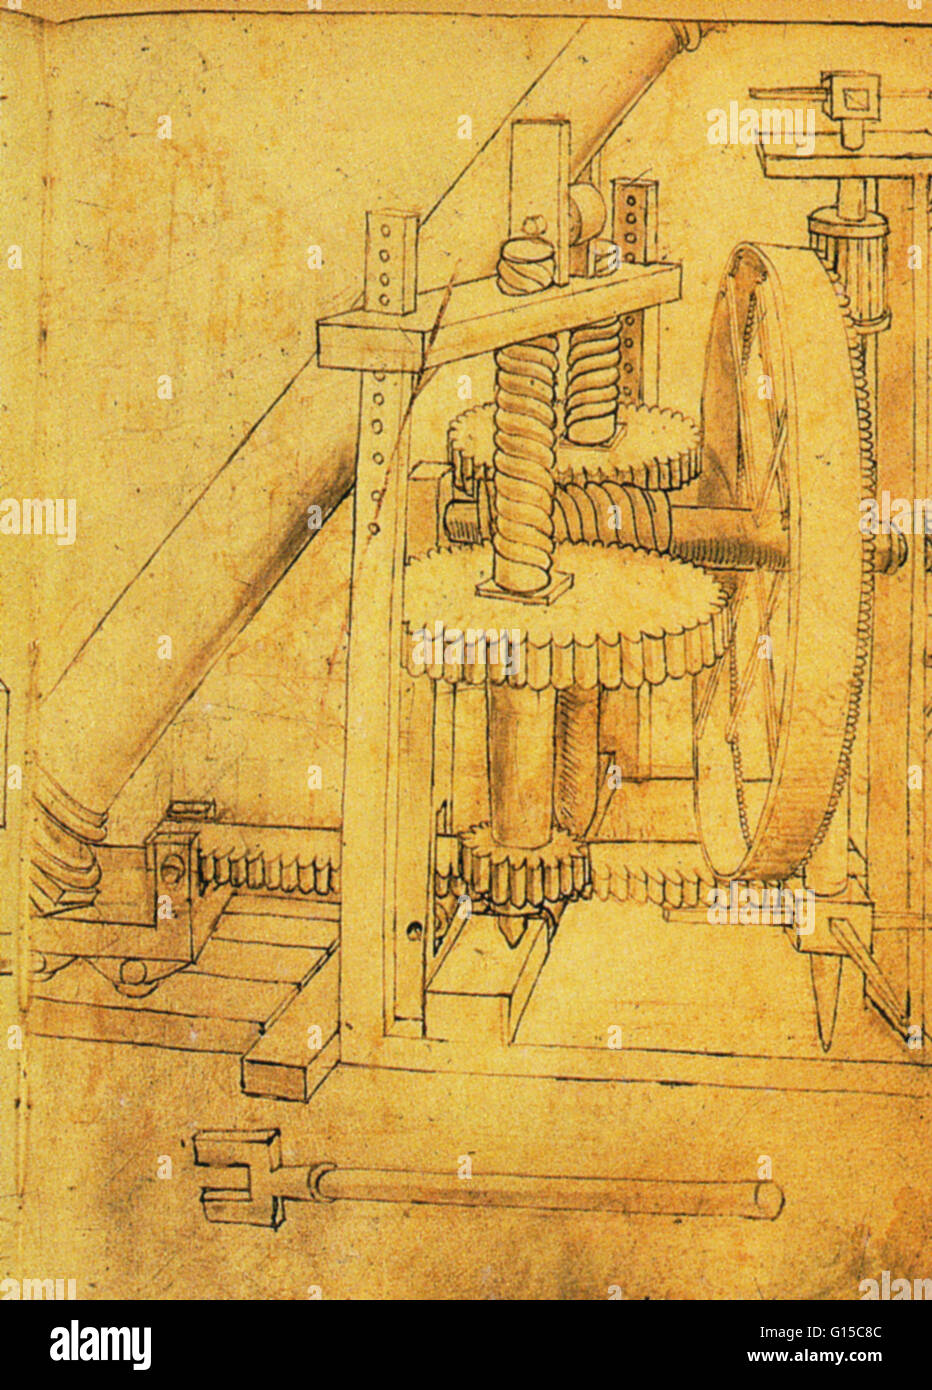 Eine Spalte Lifter von di Giorgio (1439-1502) entworfen. Diese Heber wird von hand betrieben und beschäftigt Zahnrädern, einem Ritzel und Schnecken, eine fahrbare Plattform zu ziehen, auf der die Spalte Basis ruht. Zwischen dem Mittelalter und der Renaissance Siena entwickeln Stockfoto